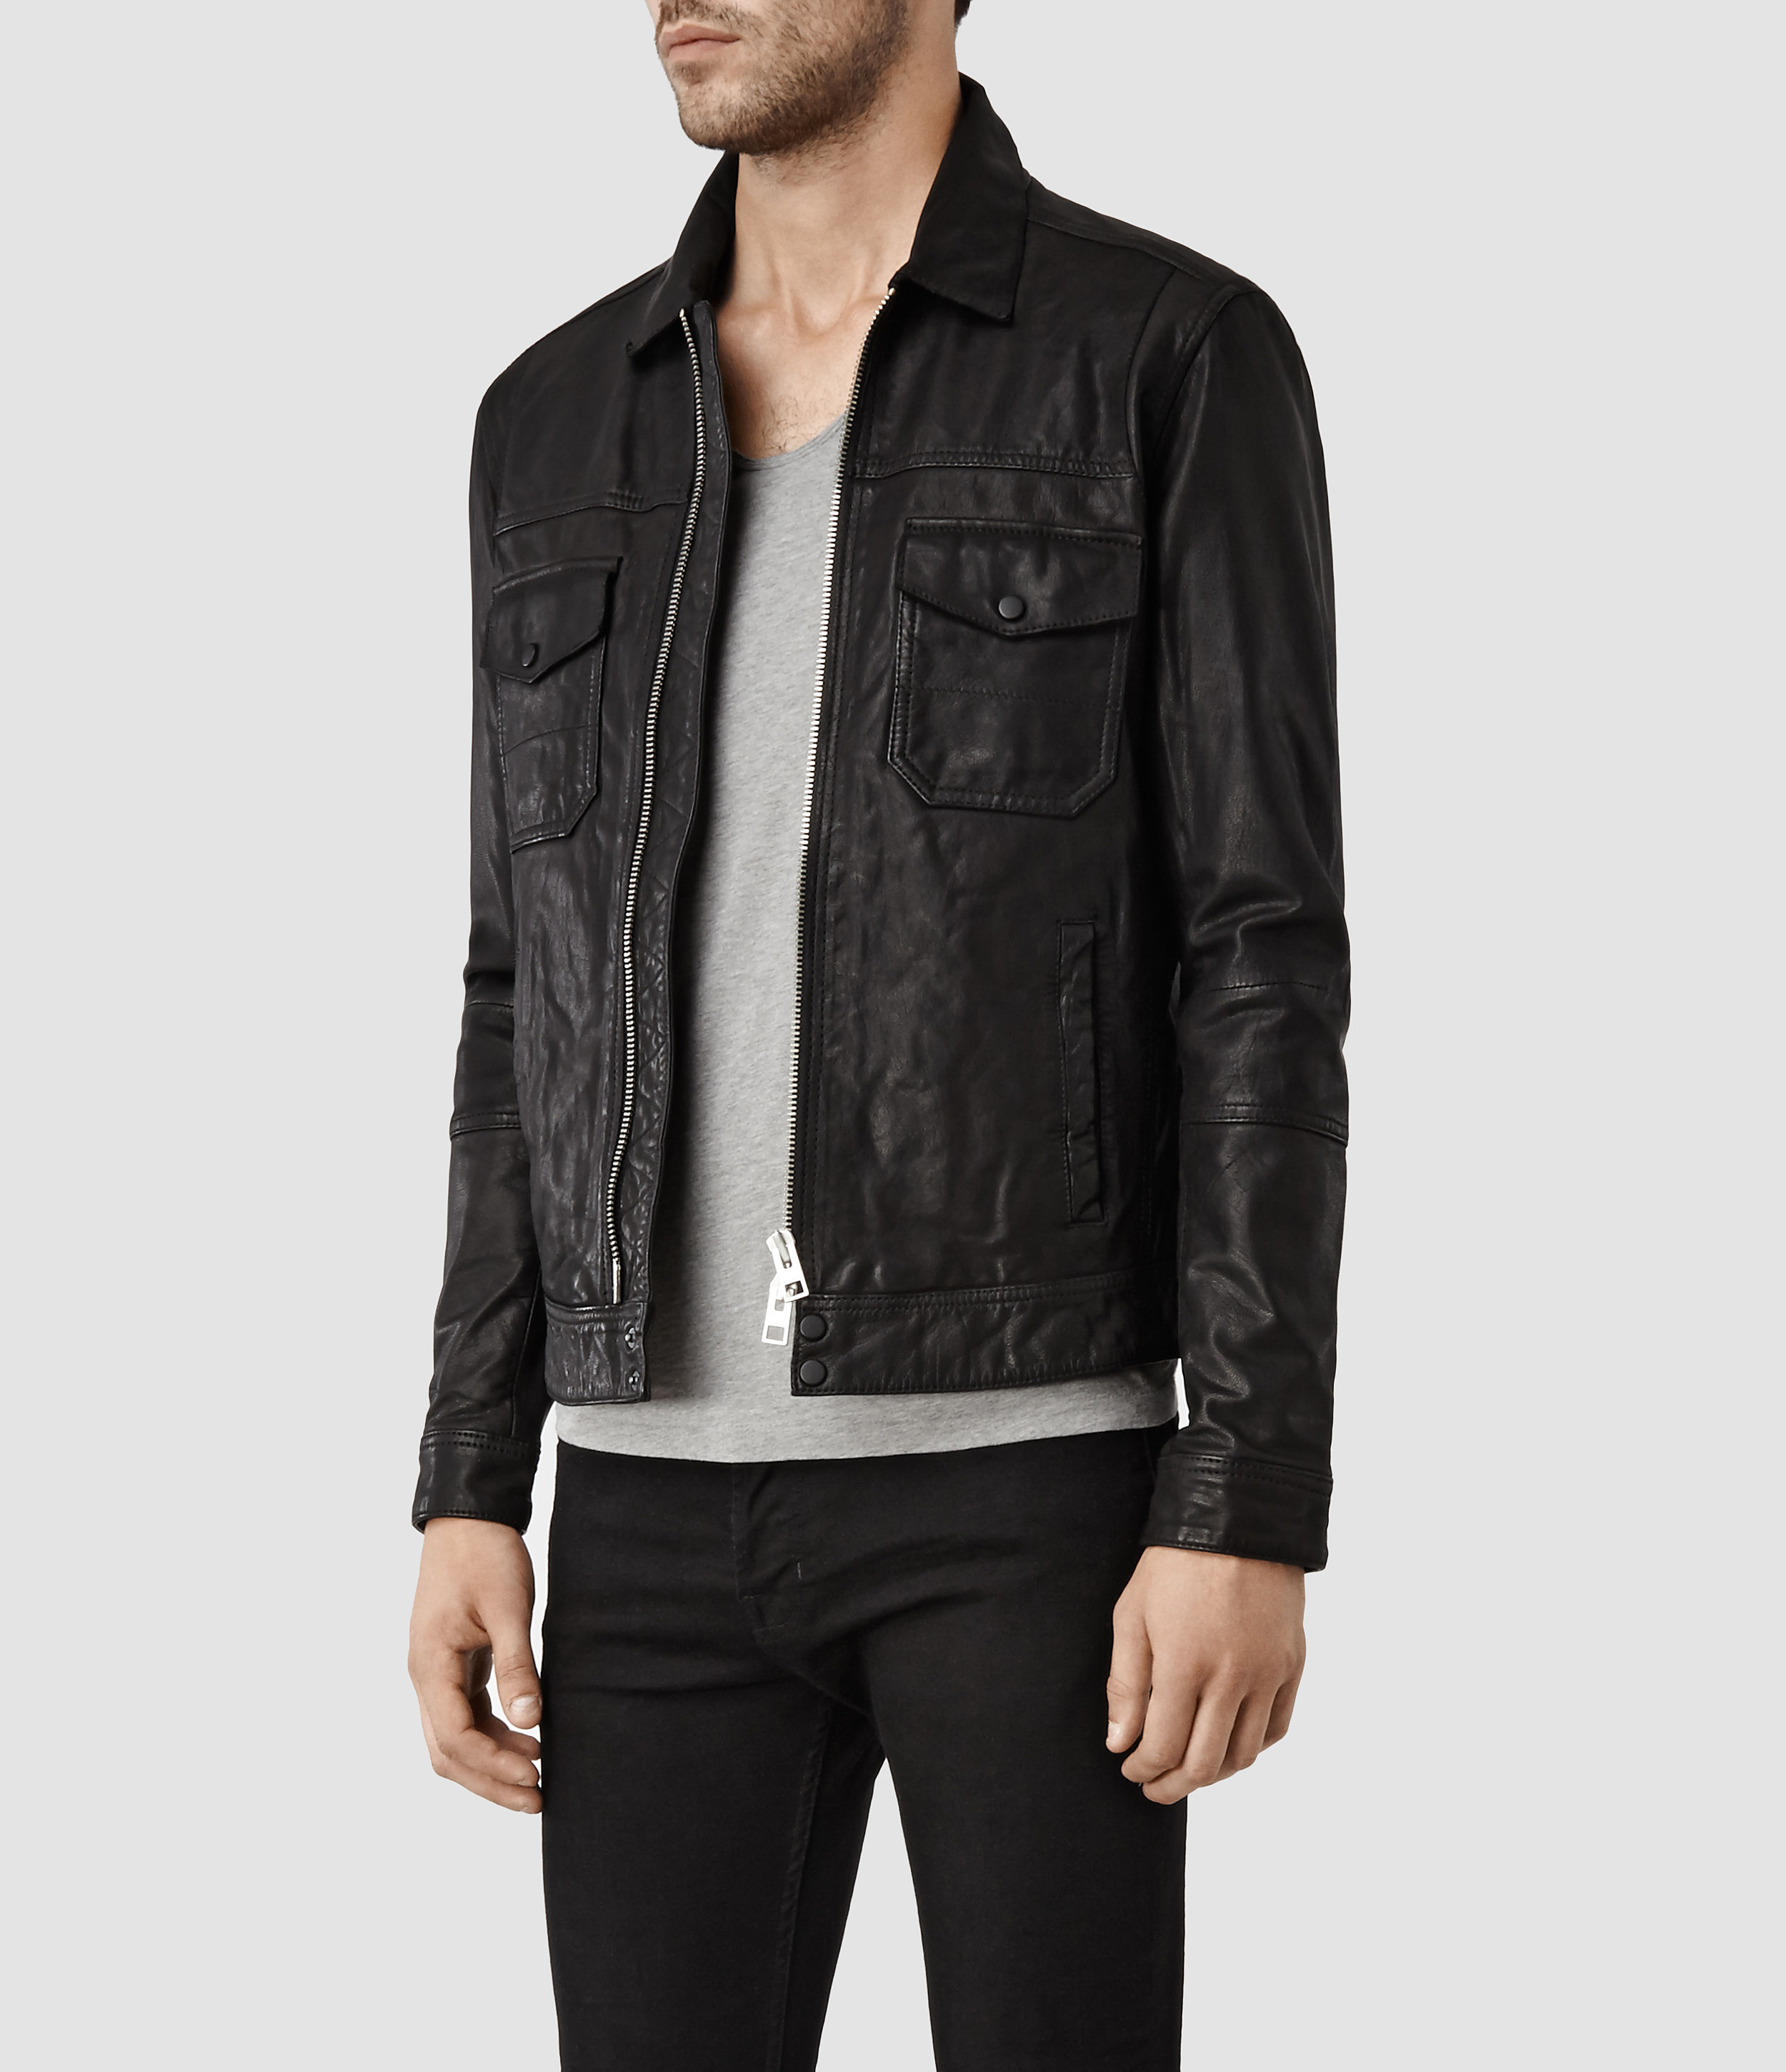 Lyst - Allsaints Morson Leather Jacket in Black for Men